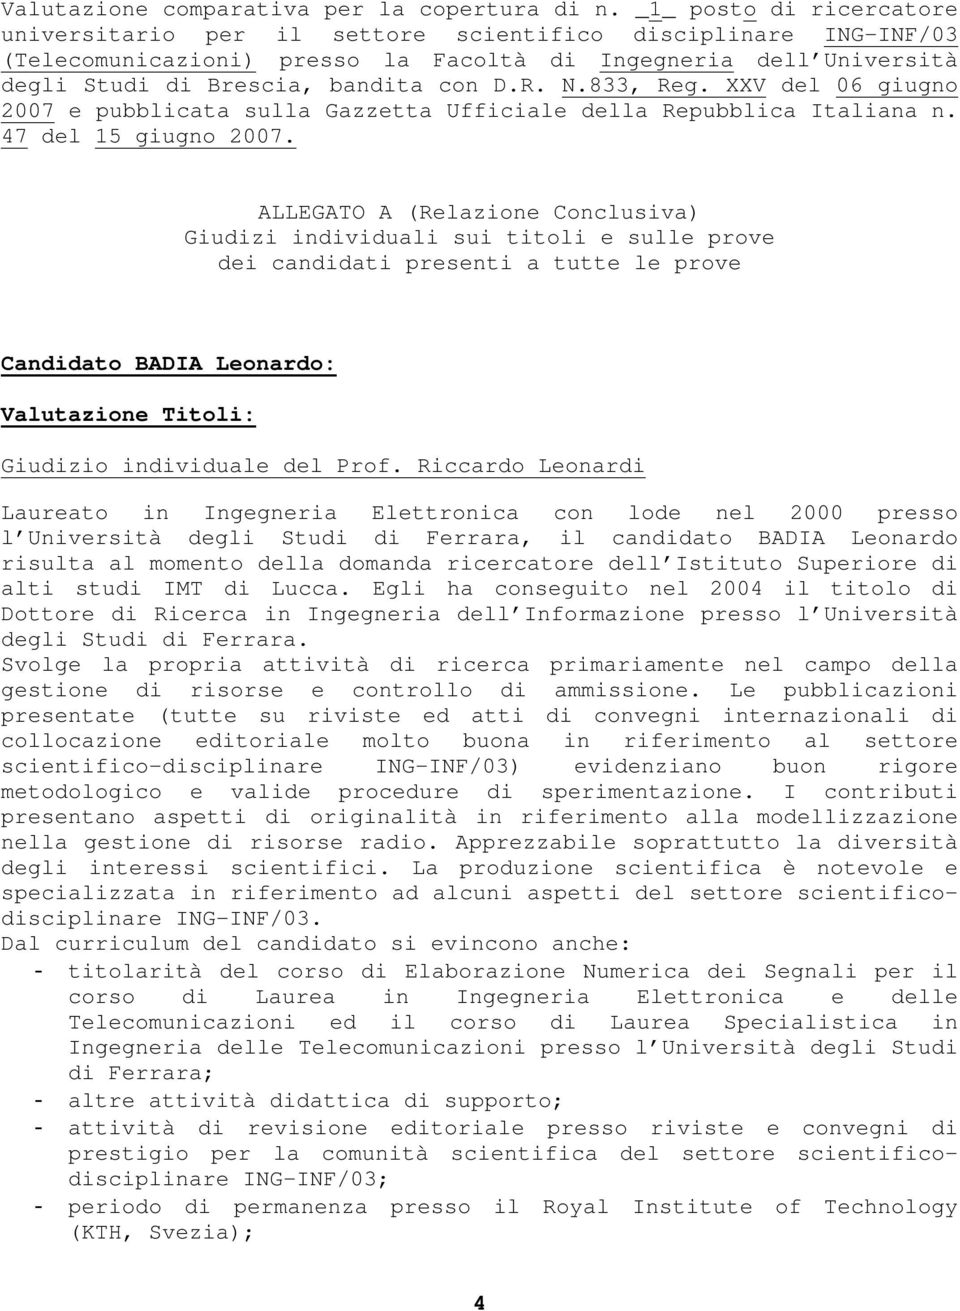 N.833, Reg. XXV del 06 giugno 2007 e pubblicata sulla Gazzetta Ufficiale della Repubblica Italiana n. 47 del 15 giugno 2007.